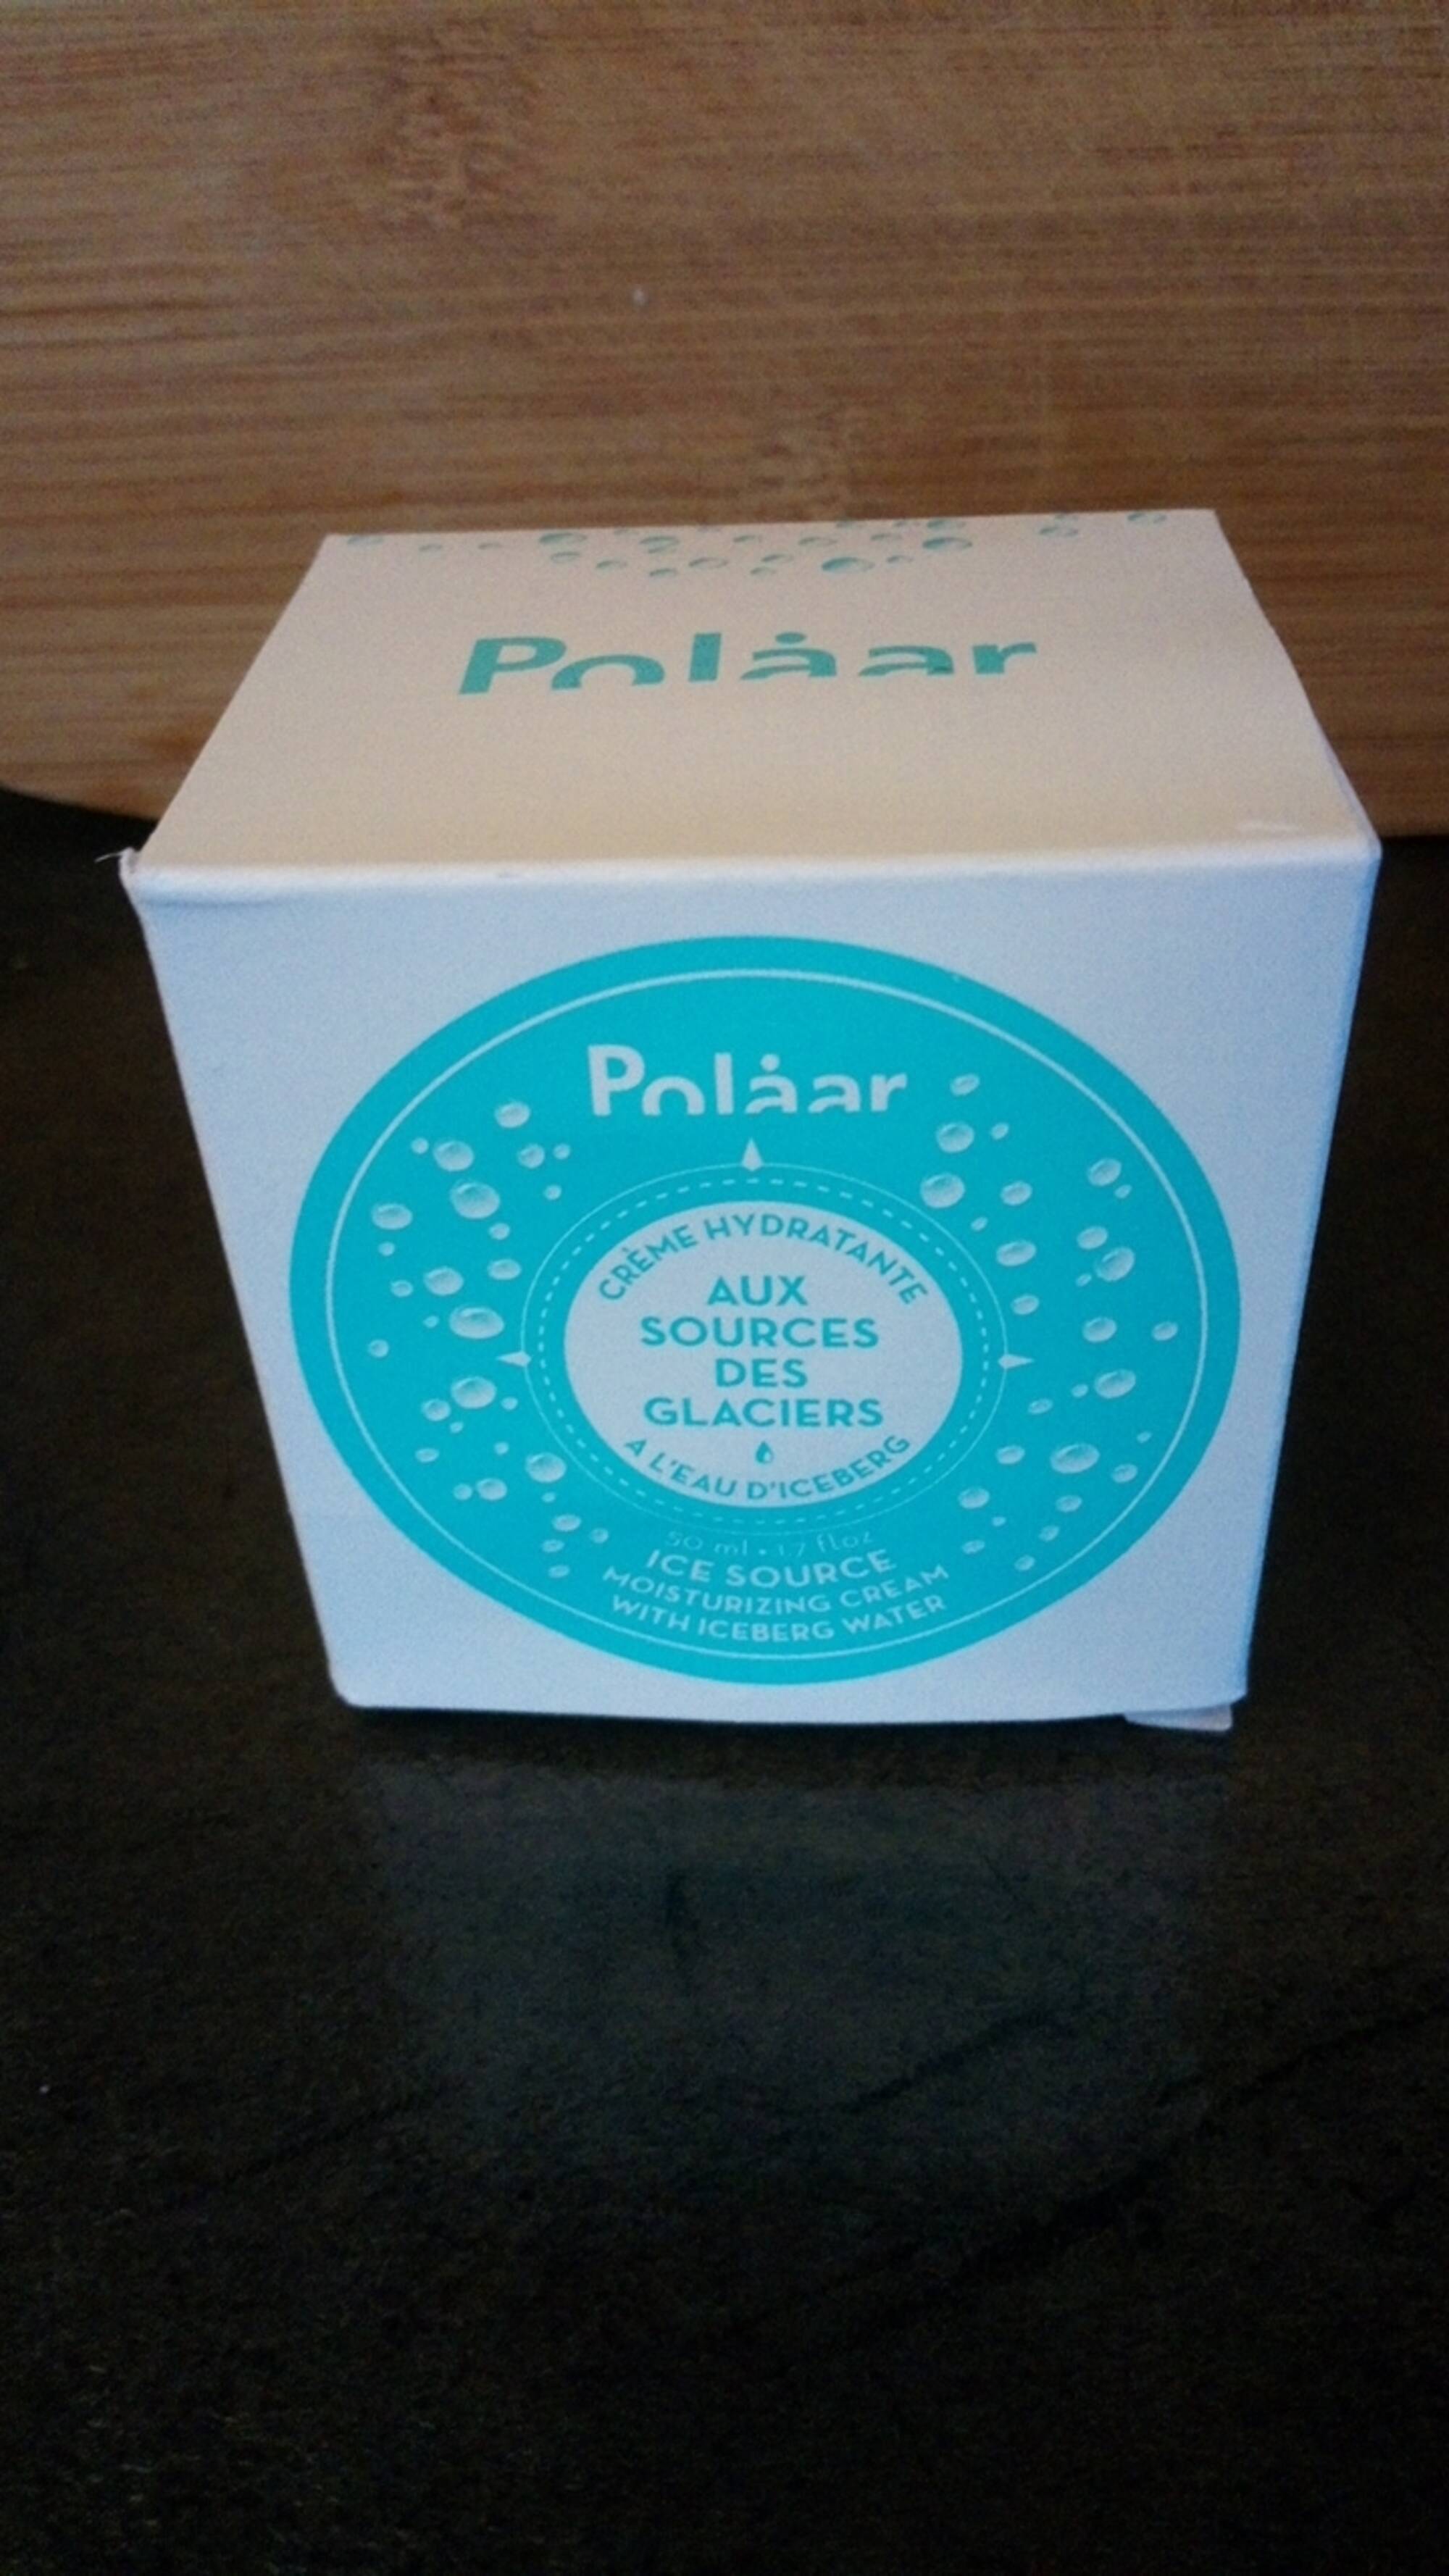 POLAAR - Crème hydratante aux sources de glaciers